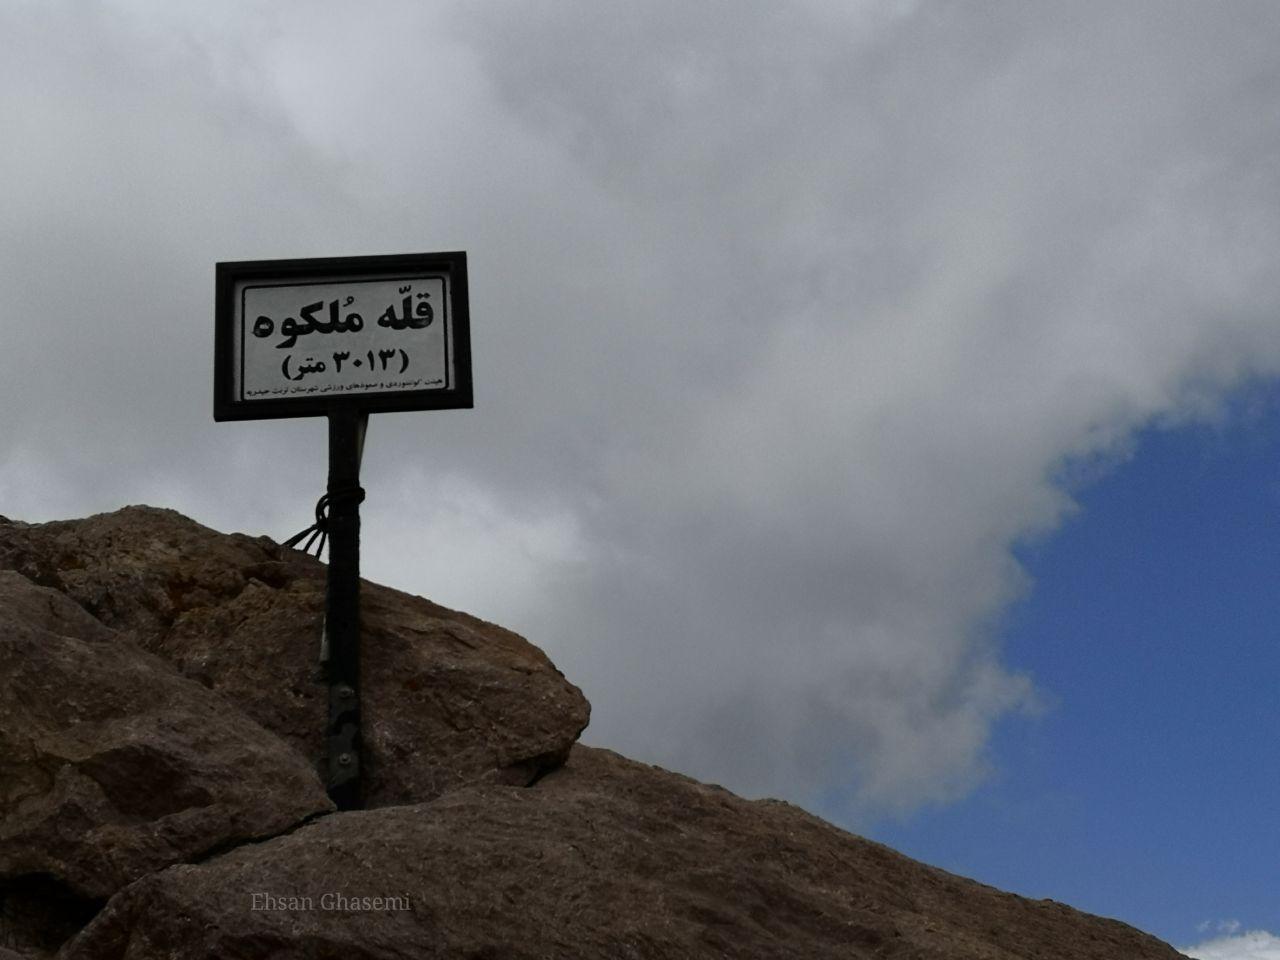 72 ساعت بعد از حادثه سقوط در قله “ملکوه” تربت حیدریه؛دختر کوهنورد همچنان در کماست